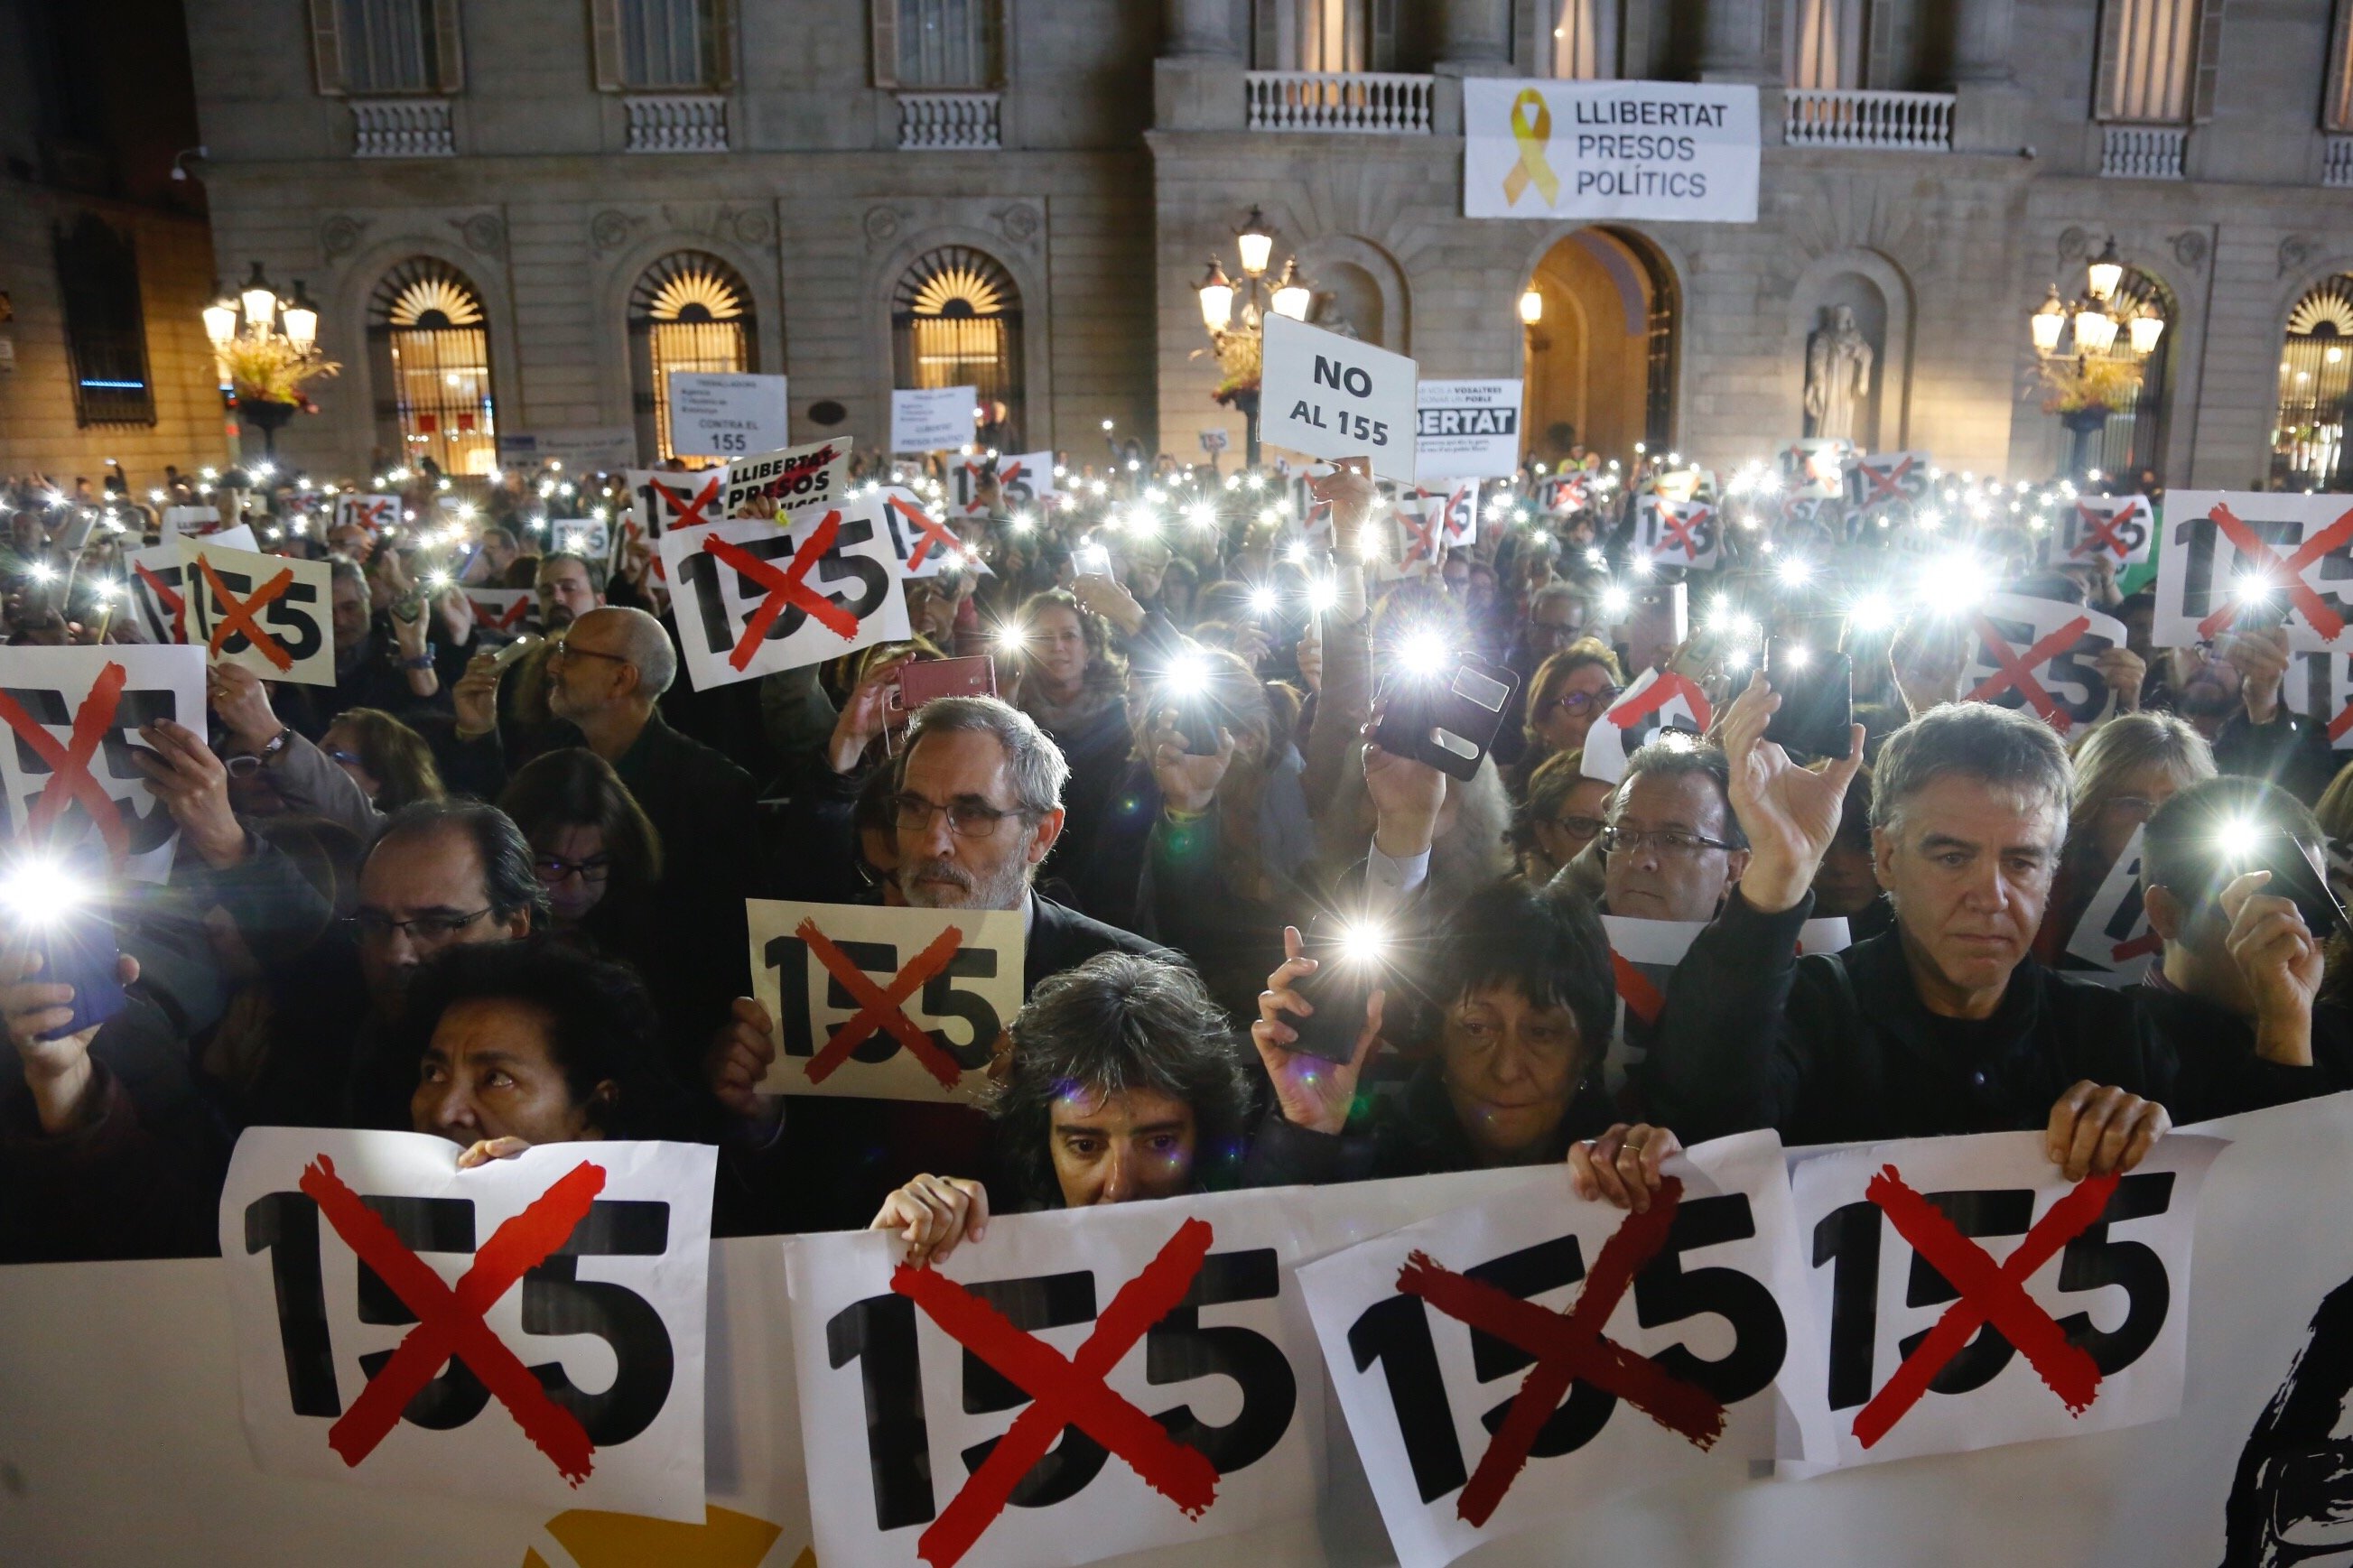 Treballadors de la Generalitat clamen contra el 155 i a favor dels presos